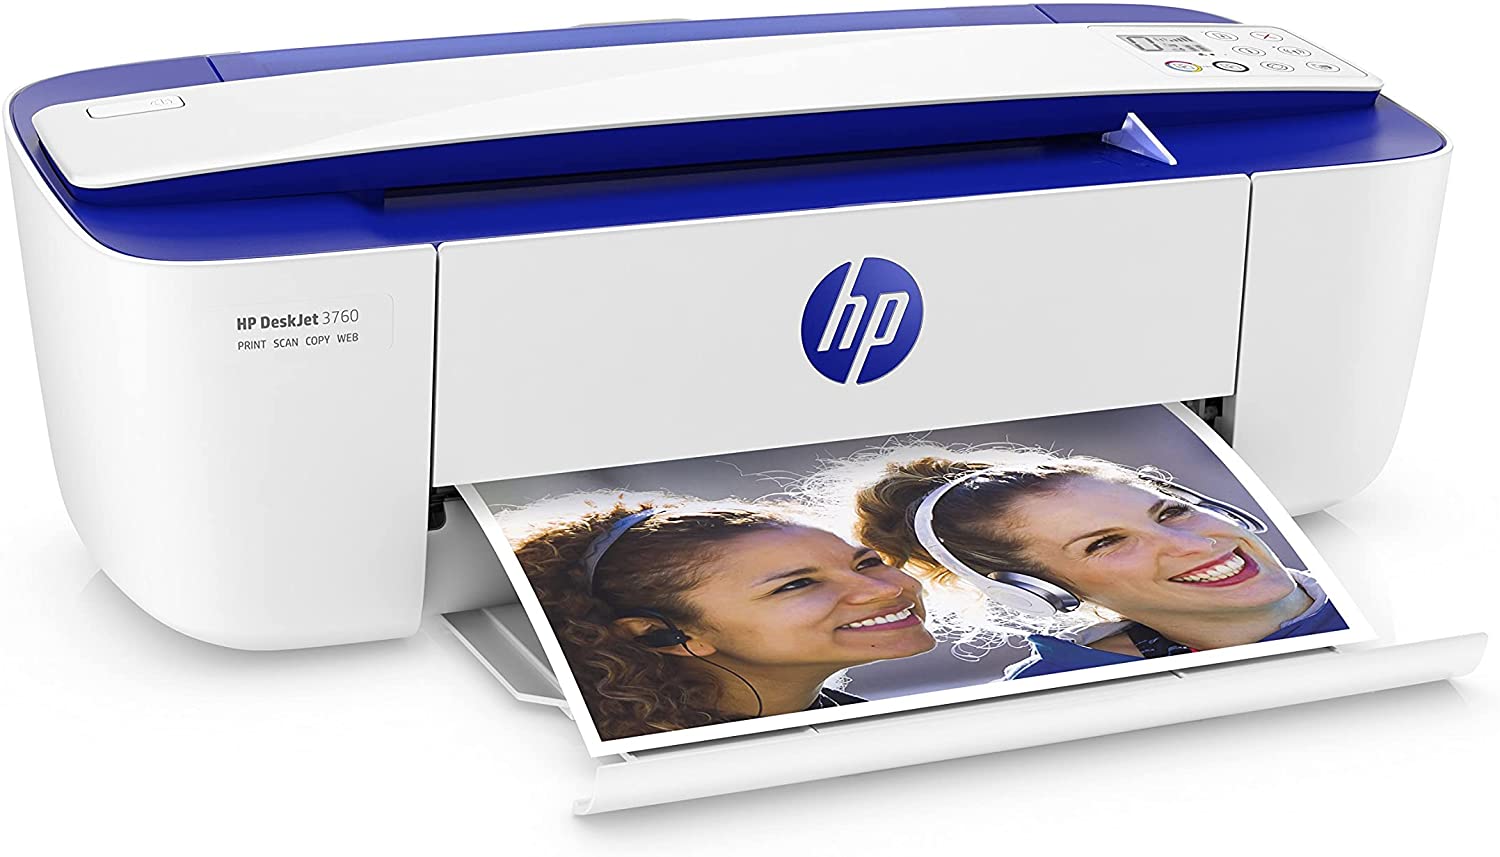 La HP Deskjet 3720, l'imprimante tout-en-un la plus compacte au monde